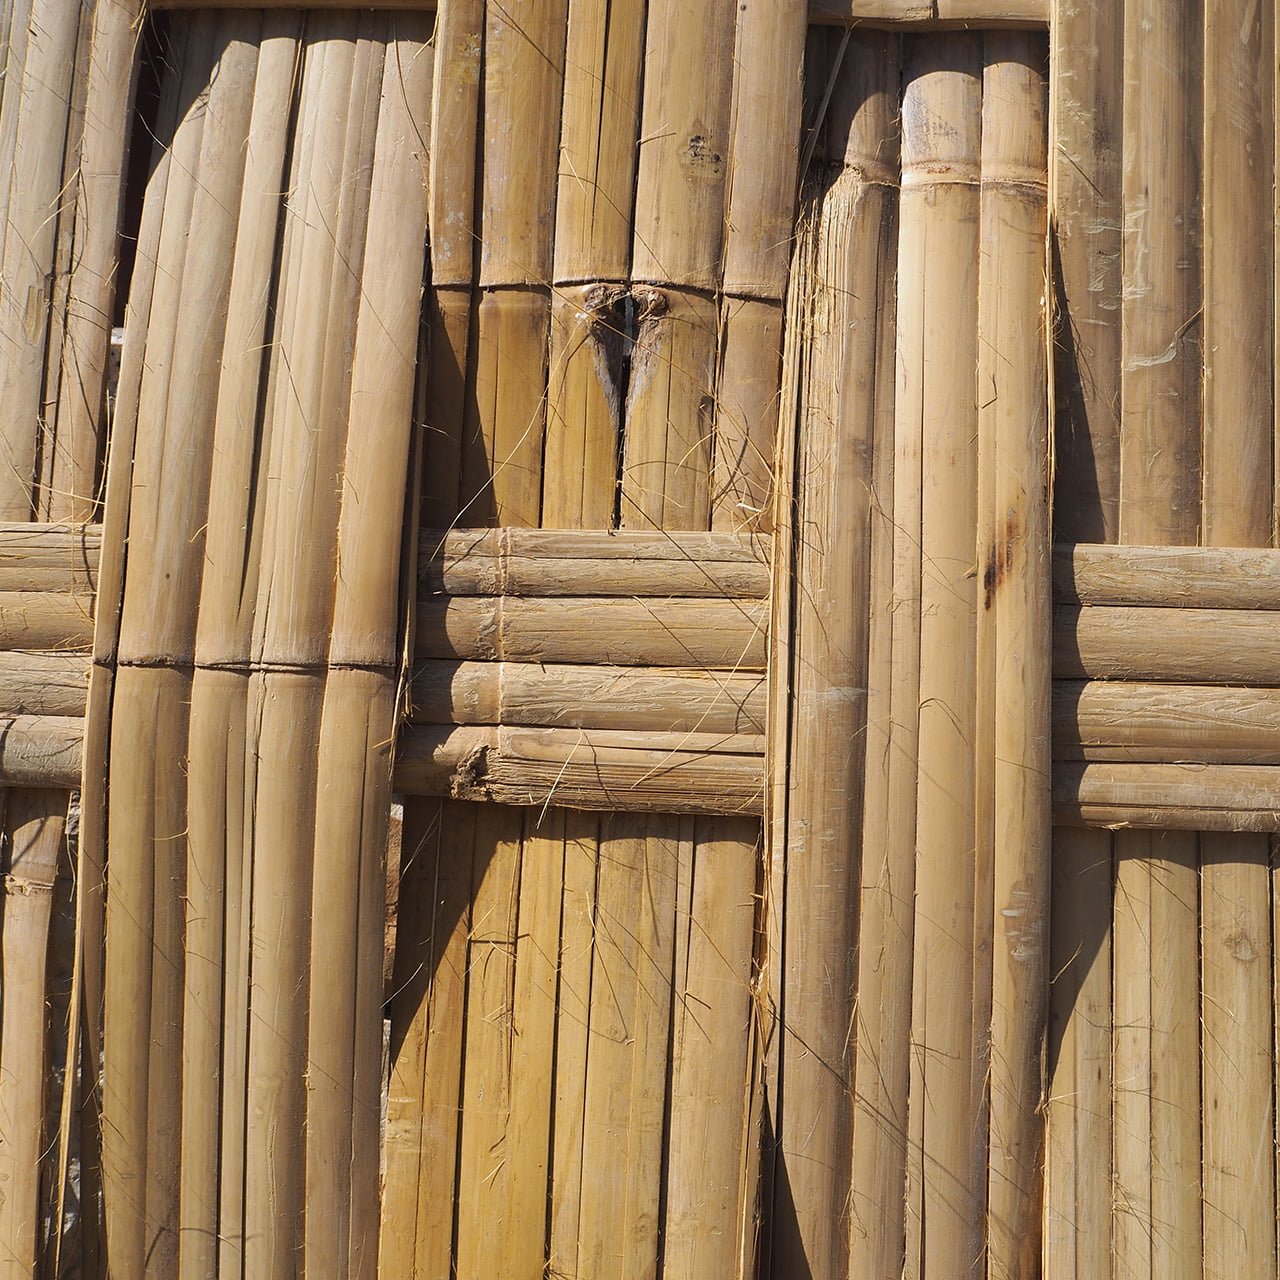 Pannelli in bamboo intrecciato - Banbamboo